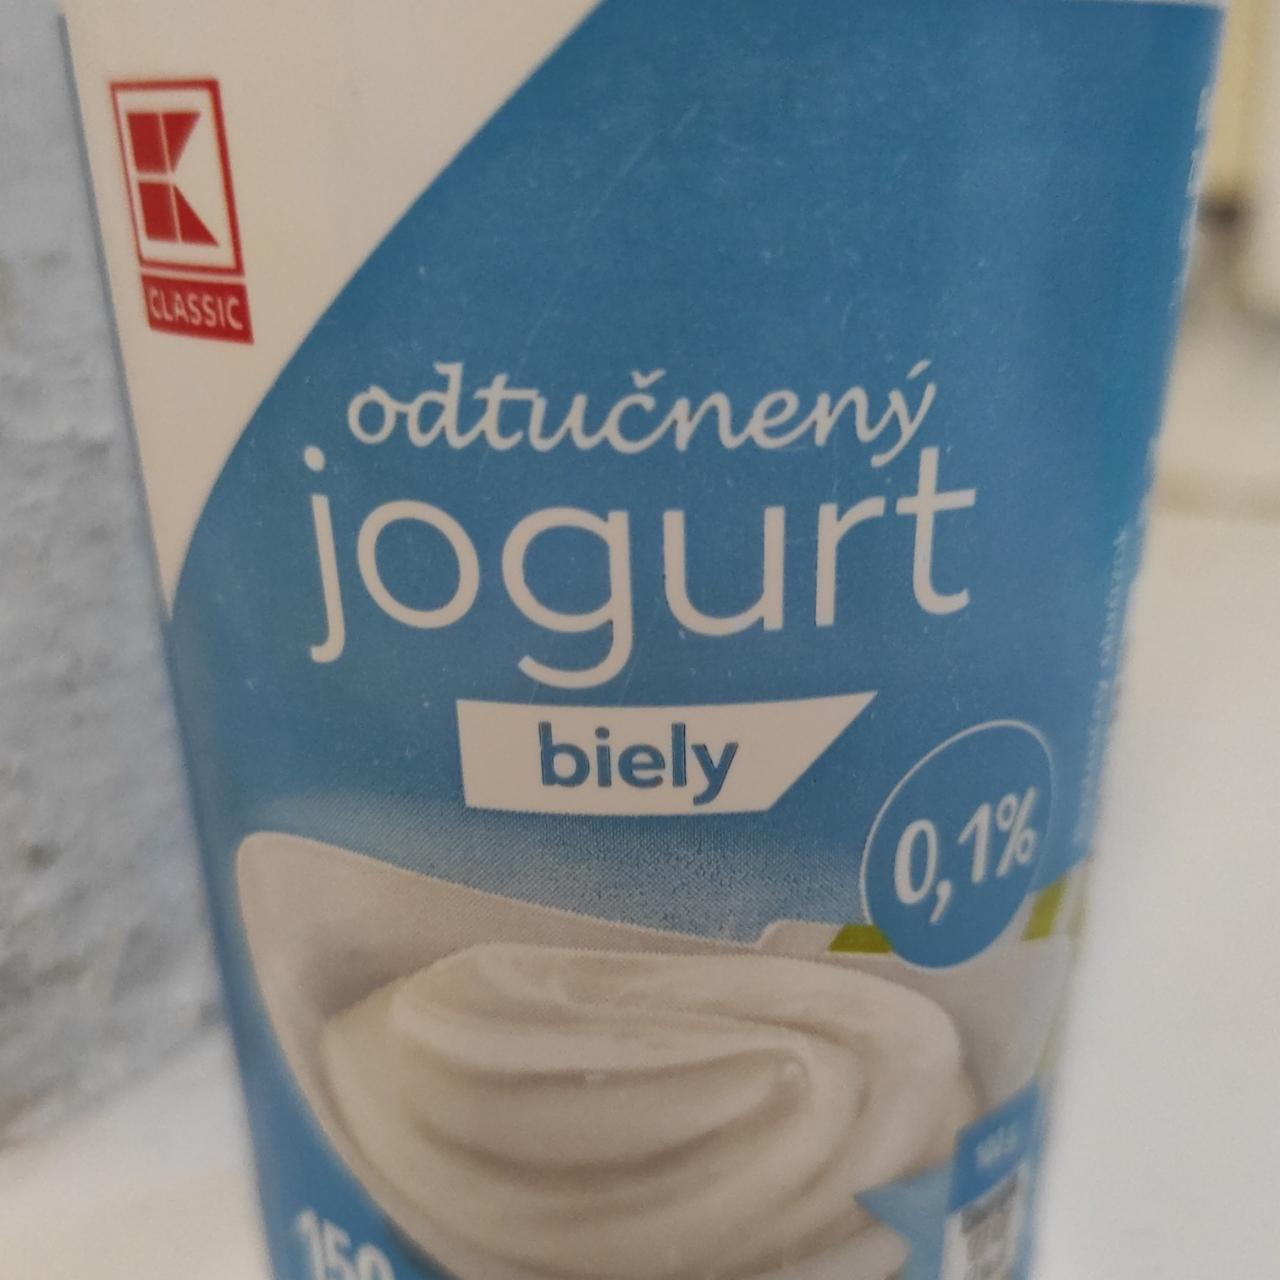 Fotografie - Odtučnený jogurt biely K-Classic